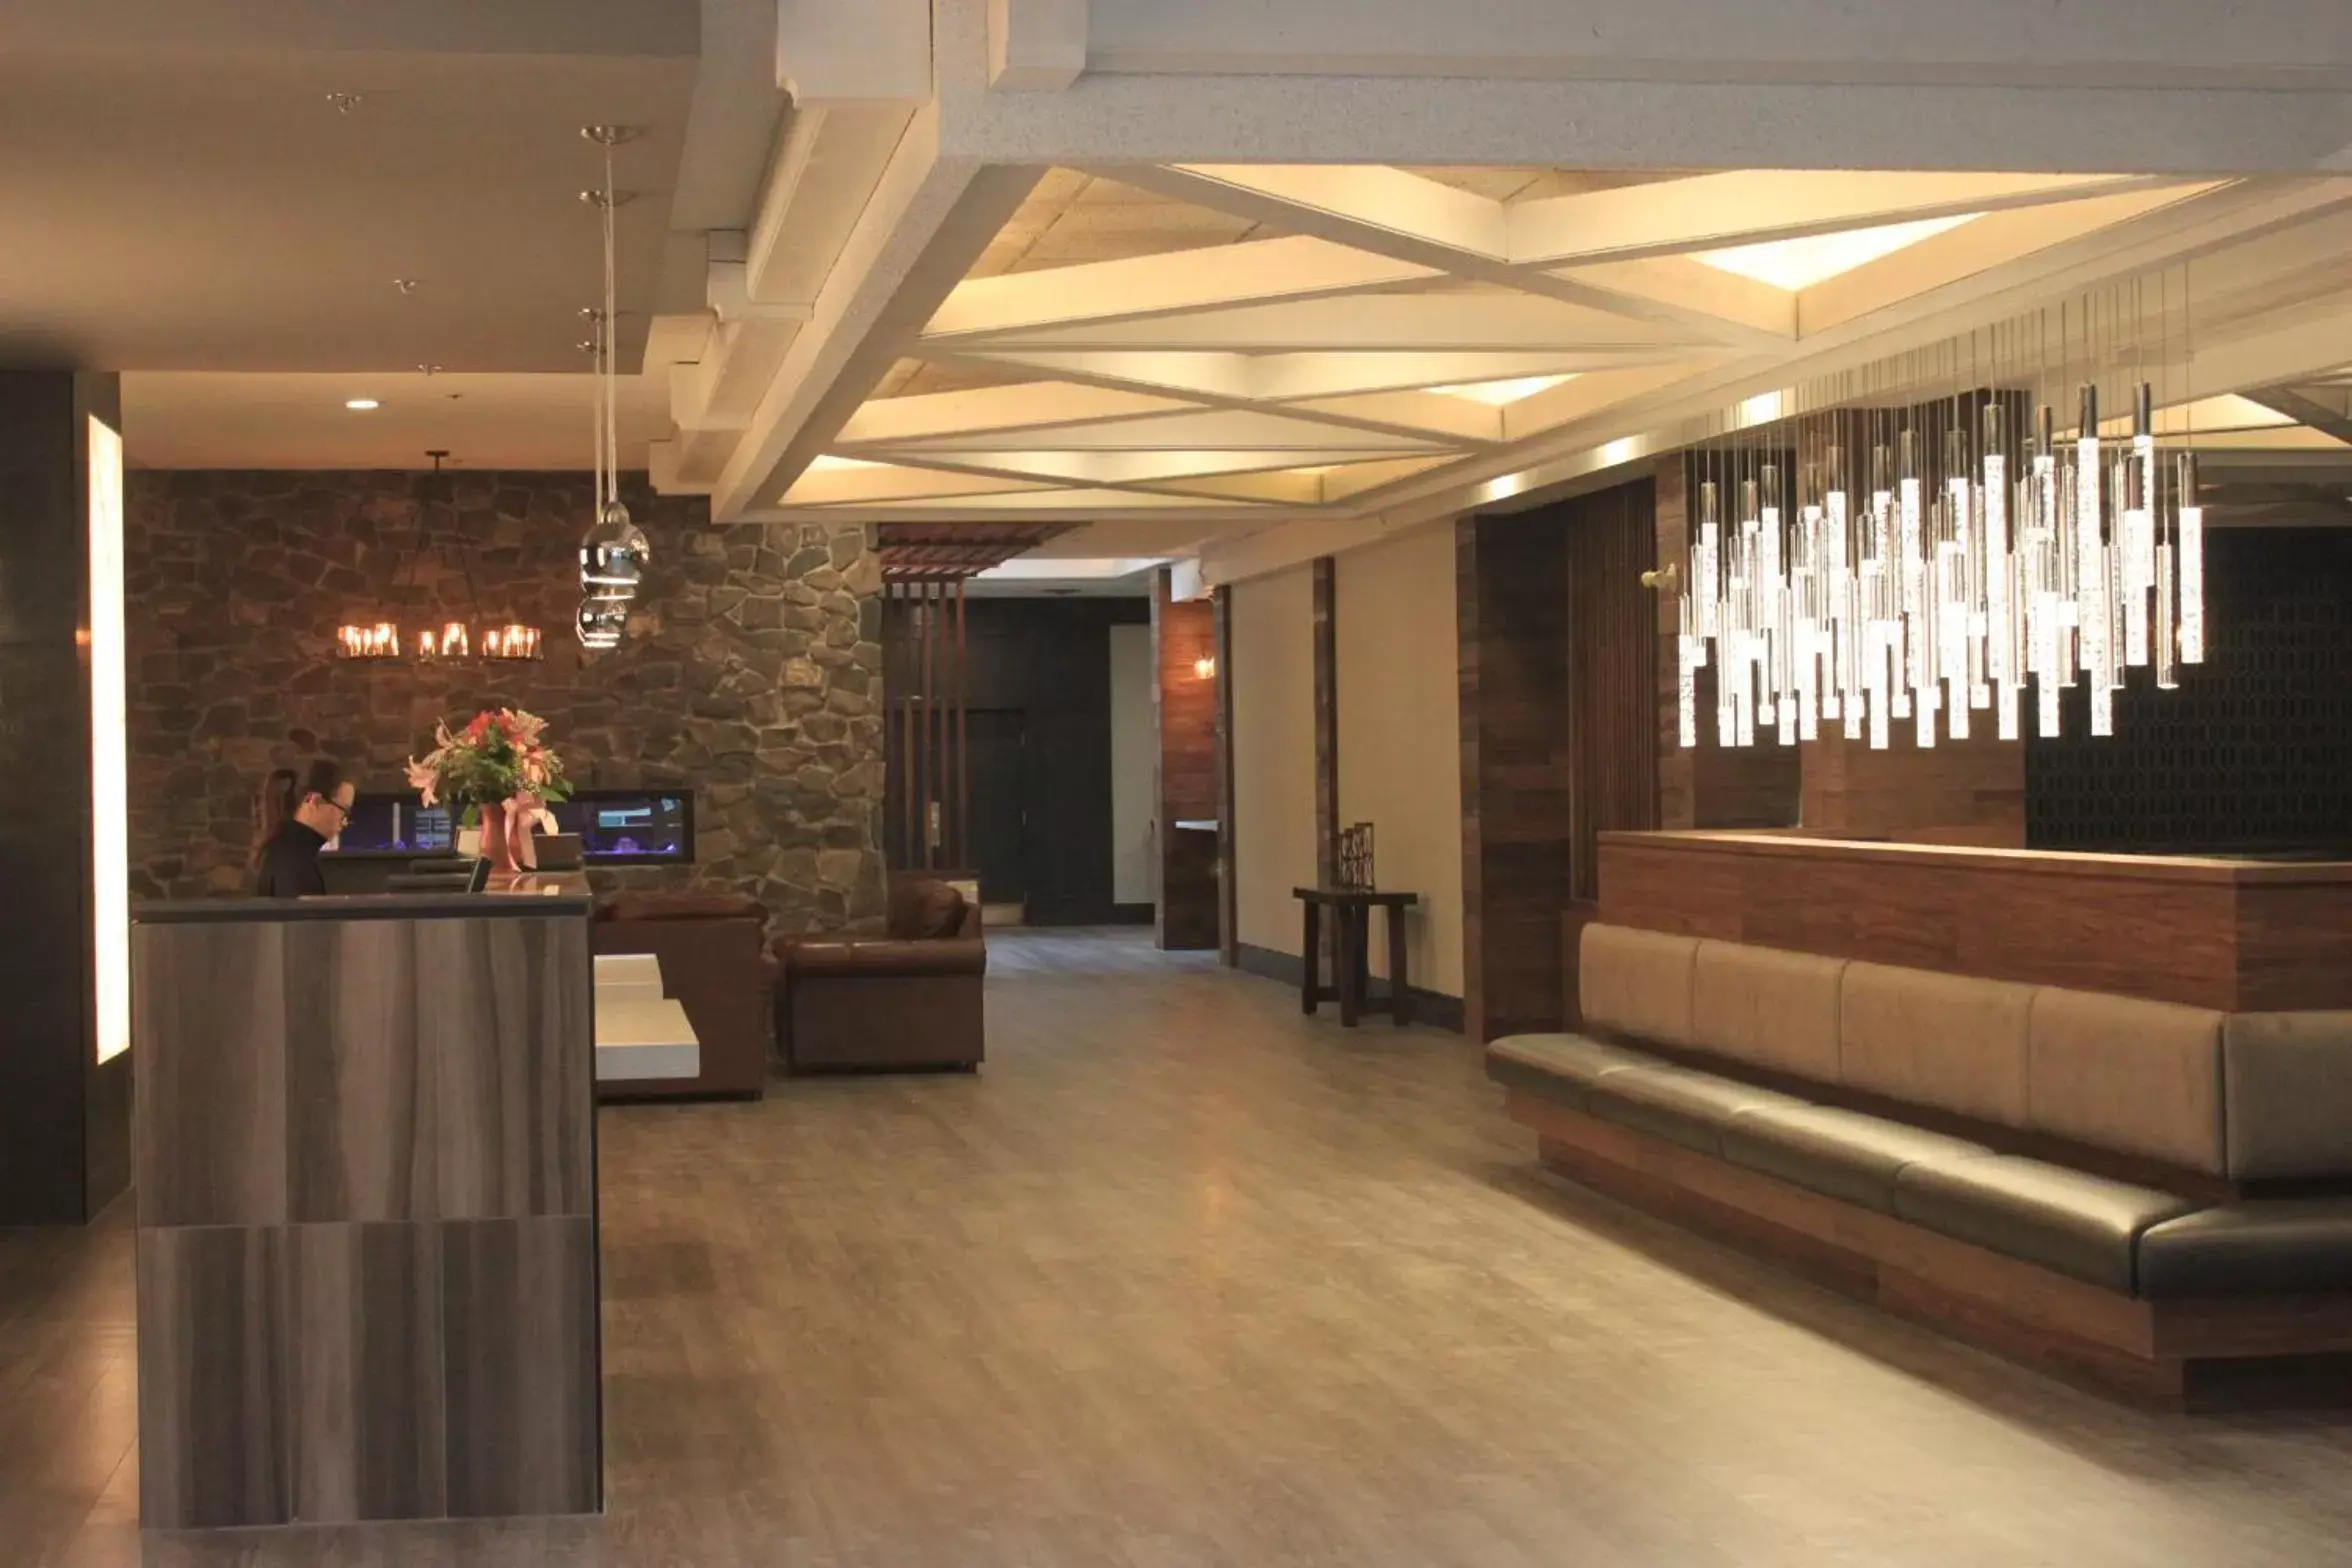 Lobby or reception, Lobby/Reception in Elk + Avenue Hotel